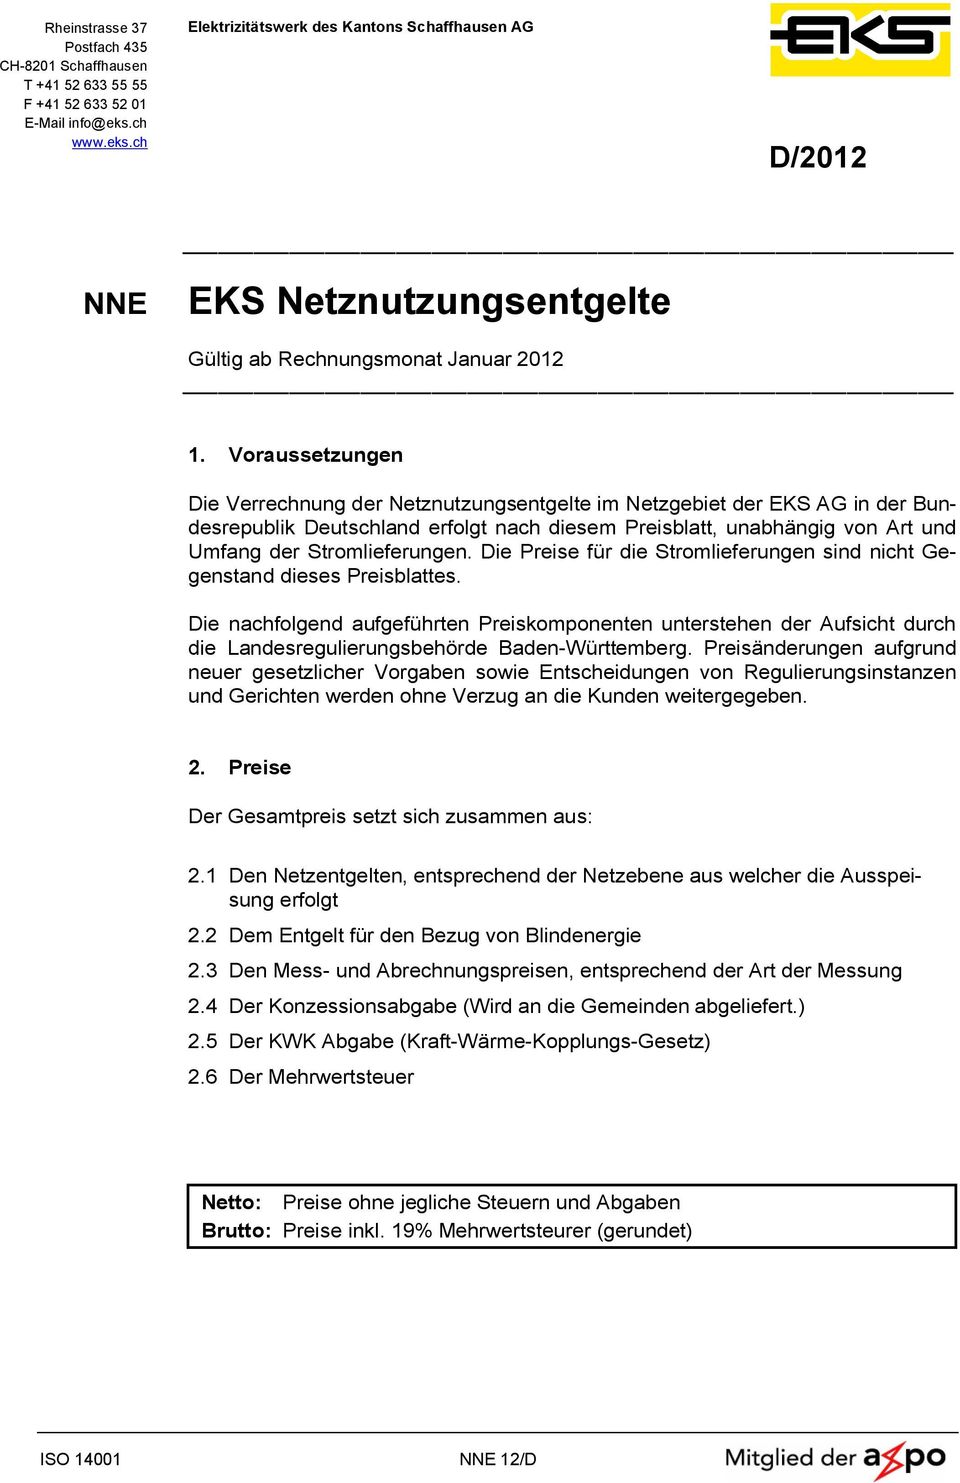 Voraussetzungen Die Verrechnung der Netznutzungsentgelte im Netzgebiet der EKS AG in der Bundesrepublik Deutschland erfolgt nach diesem Preisblatt, unabhängig von Art und Umfang der Stromlieferungen.